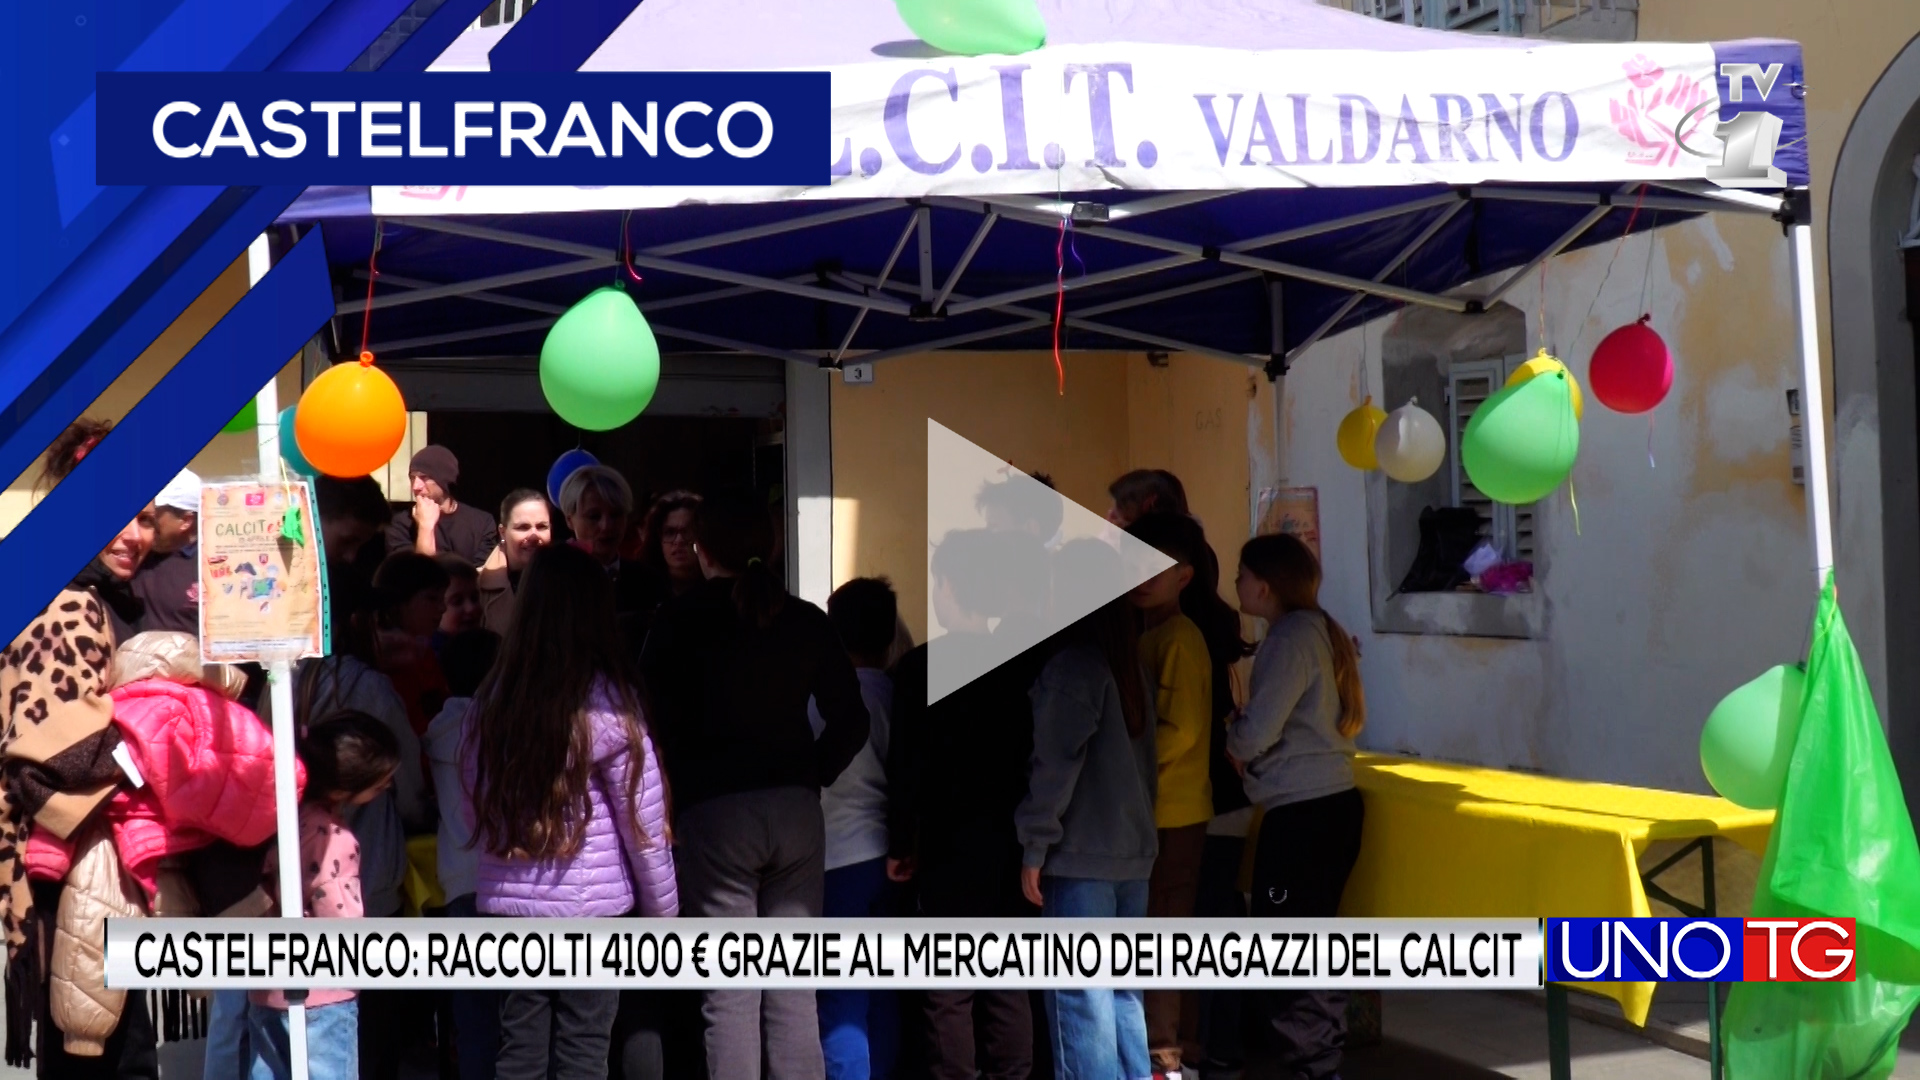 A Castelfranco raccolti 4.100 euro grazie al mercatino dei ragazzi del Calcit